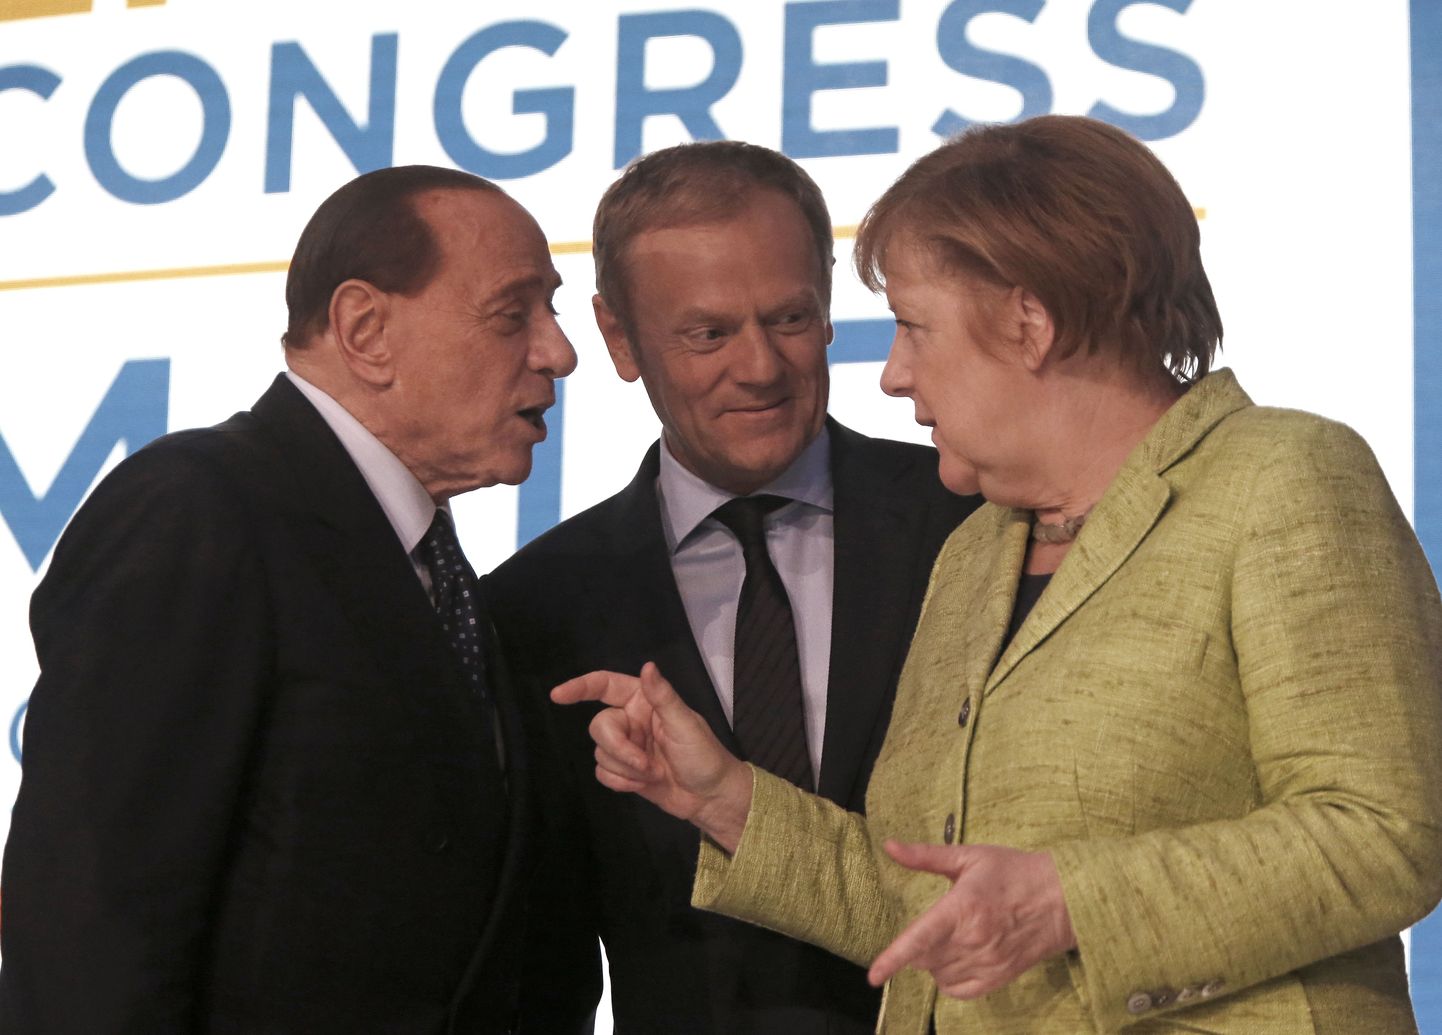 Lisaks praegu Euroopas juhtrolli hoidvatele konservatiividele eesotsas Saksa liidukantsleri Angela Merkeli (paremal) ja Donald Tuskiga (keskel), võis kongressil näha ka endisi staare, näiteks Itaalia ekspeaministrit Silvio Berlusconit.